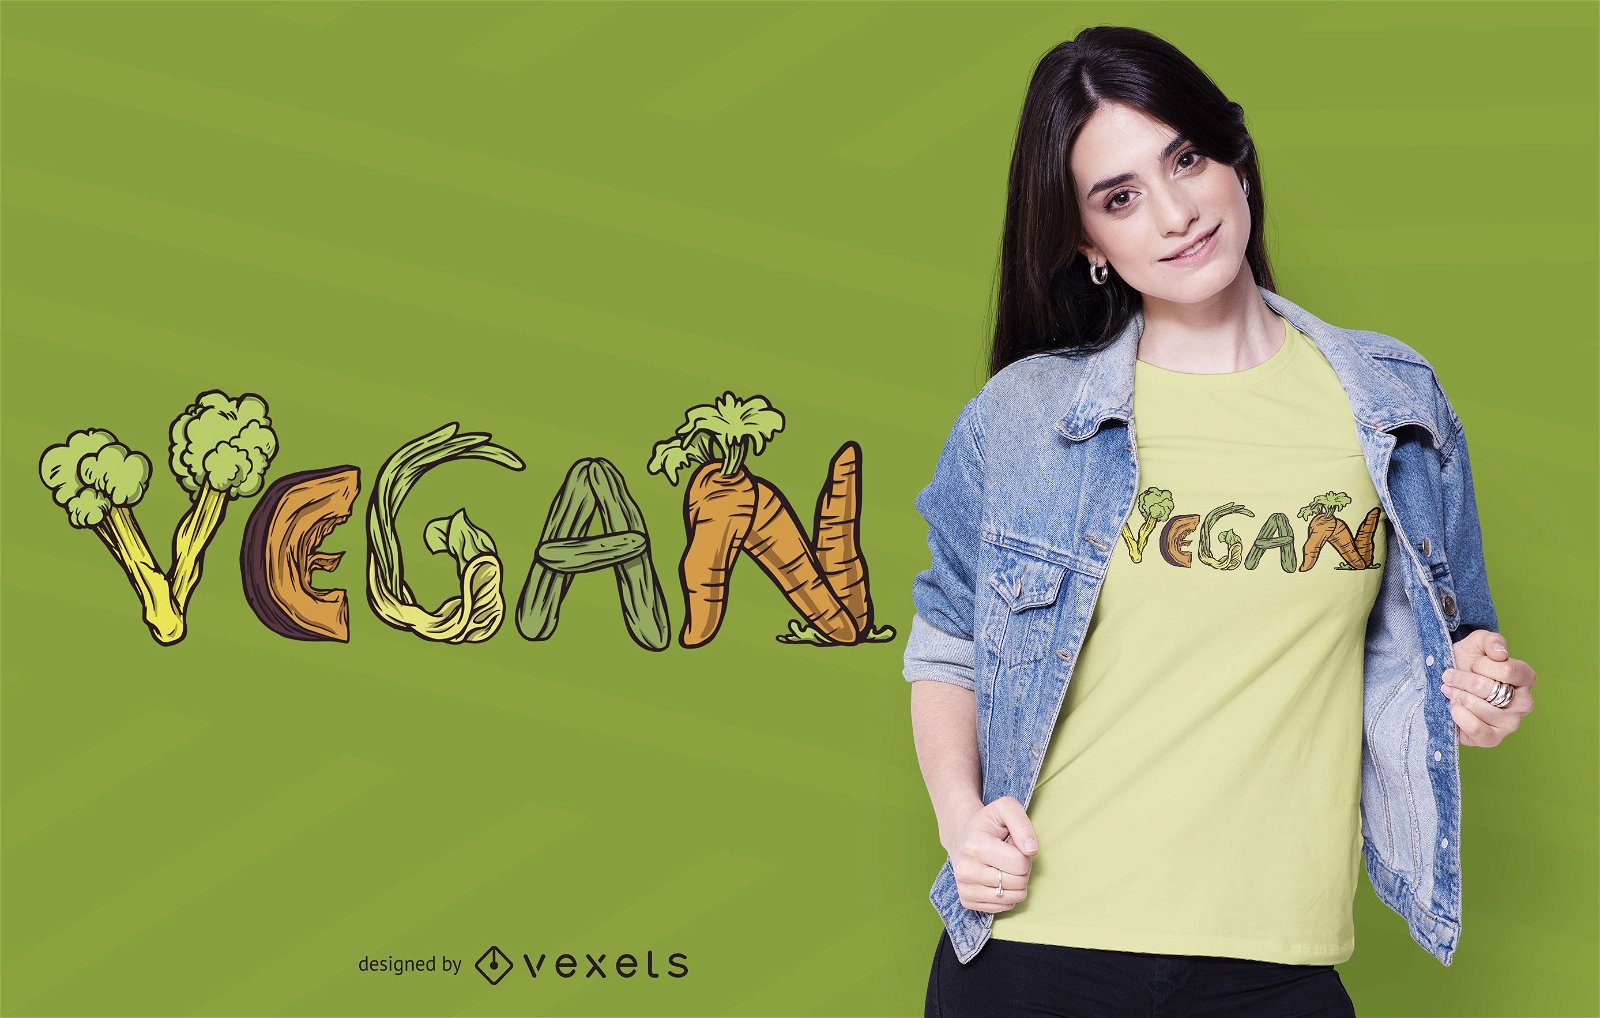 Veganes Gem?se T-Shirt Design